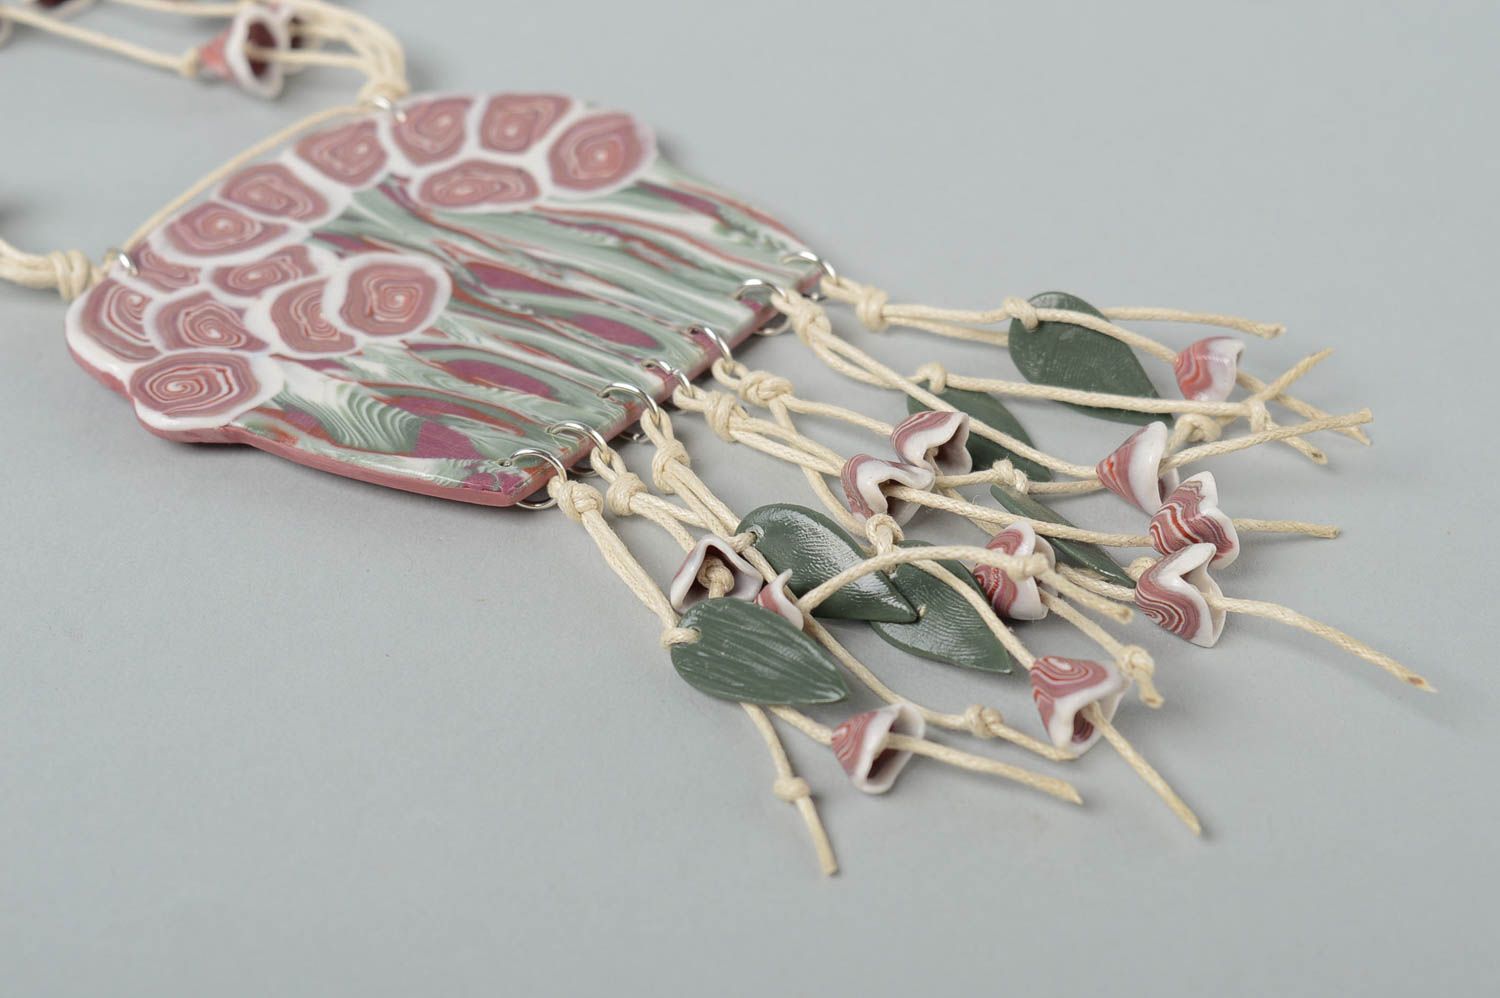 Flower pendant handmade jewelry polymer clay jewelry plastic jewelry for women photo 3